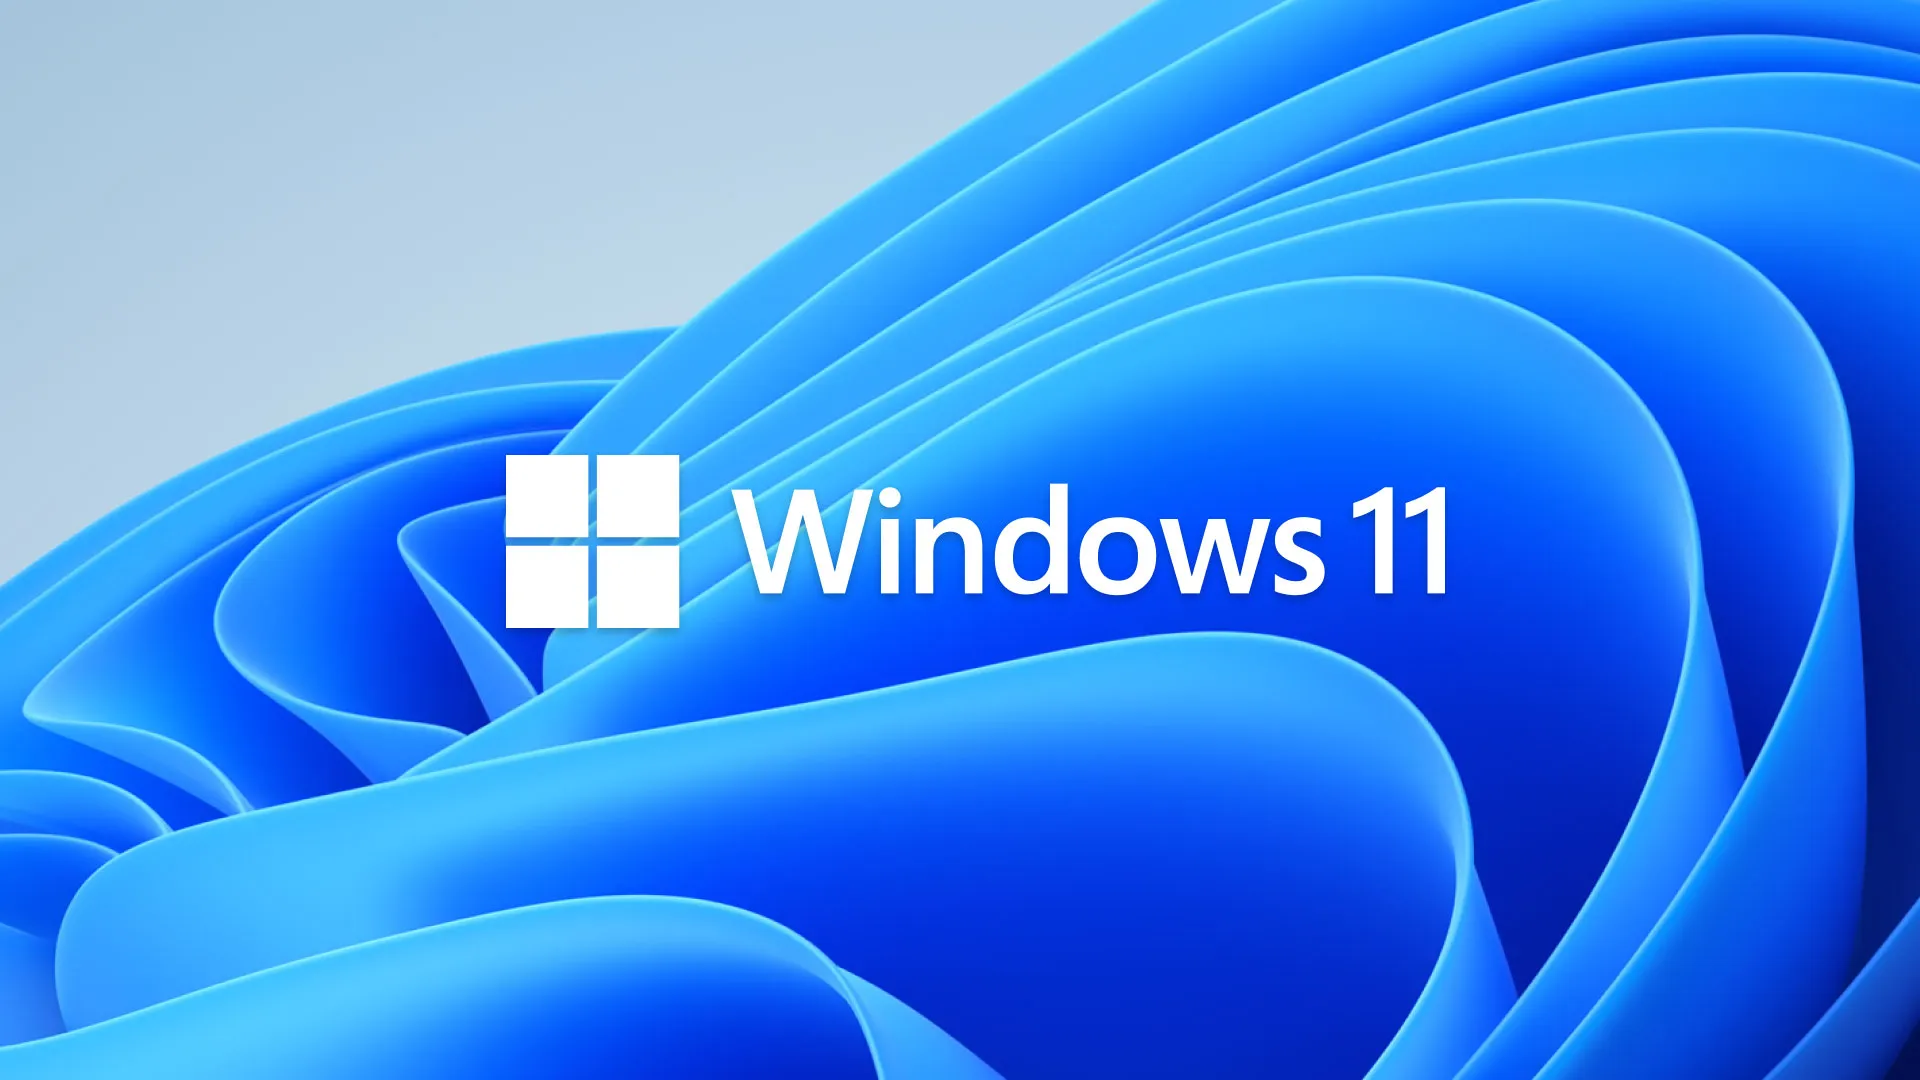 لوگوی ویندوز 11 به همراه بک گراند معروف آن